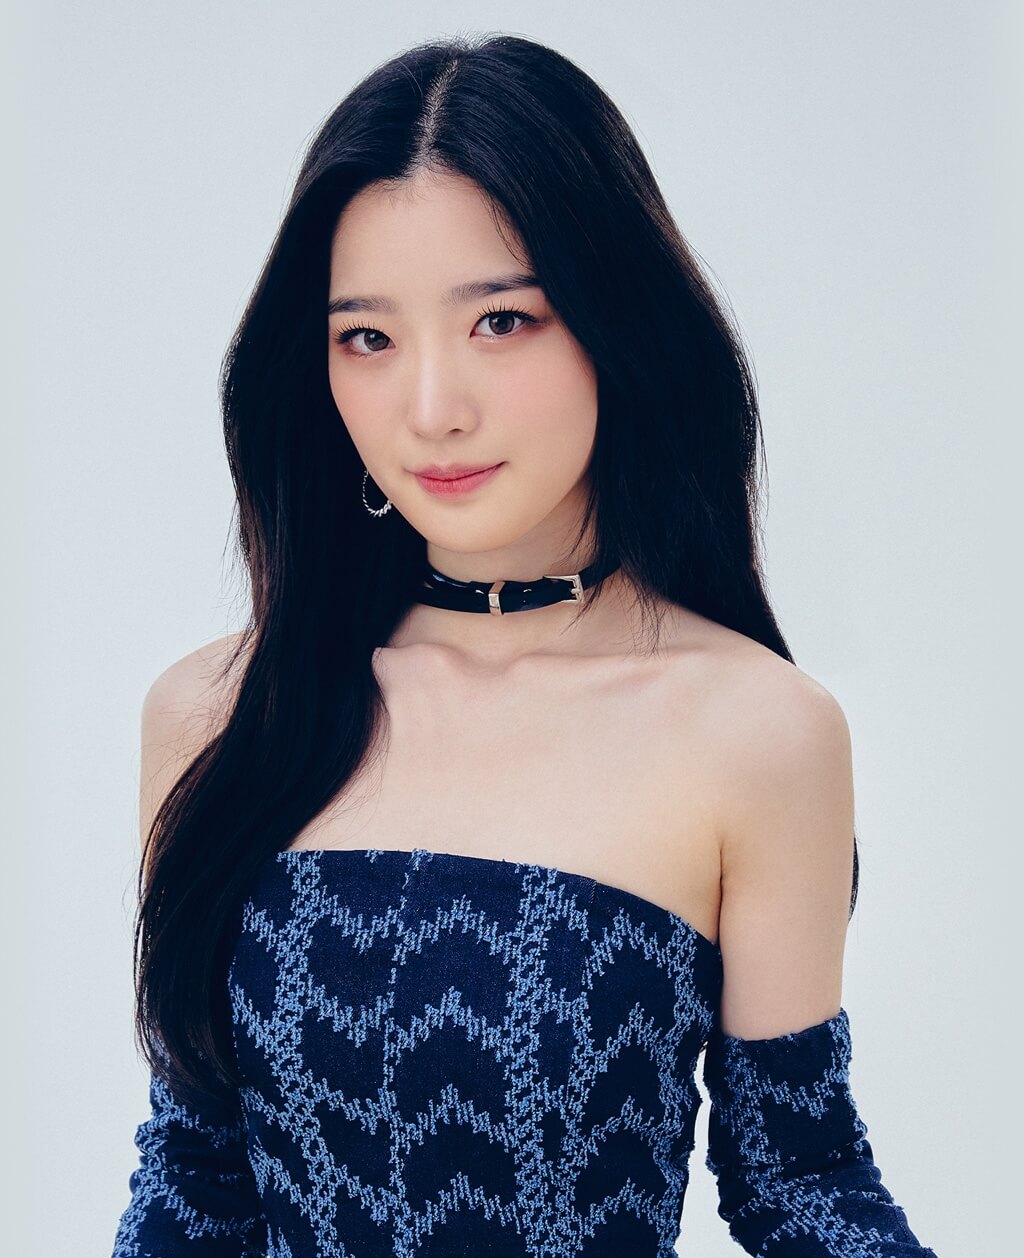 Kim Yooyeon